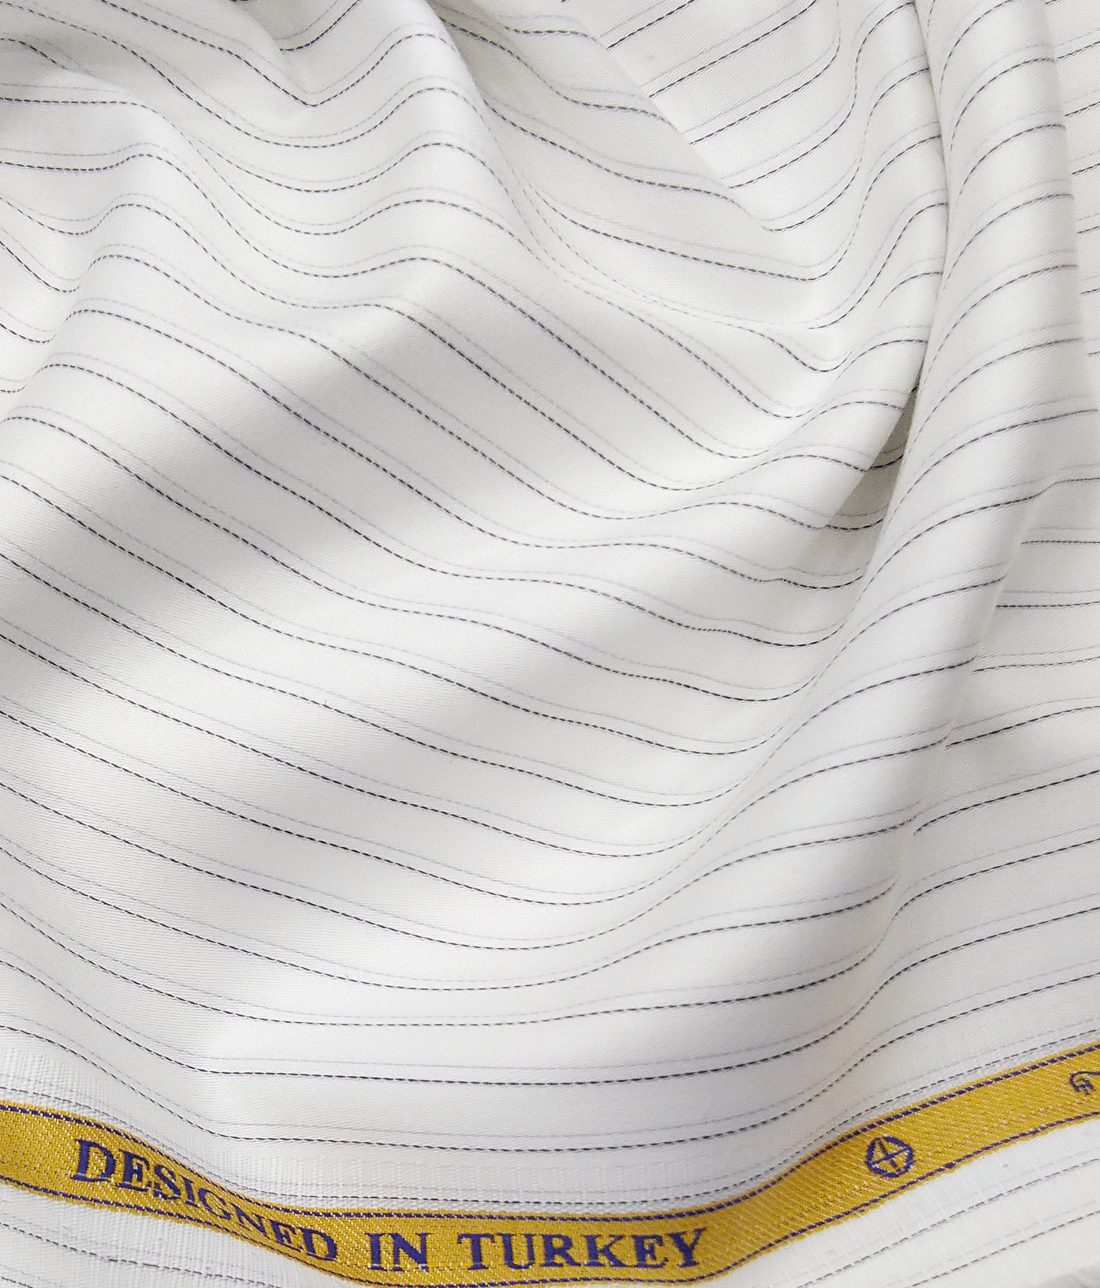 Soktas Men's Egyptian Giza Cotton Black Pin Stripes Unstitched Shirt Fabric (White